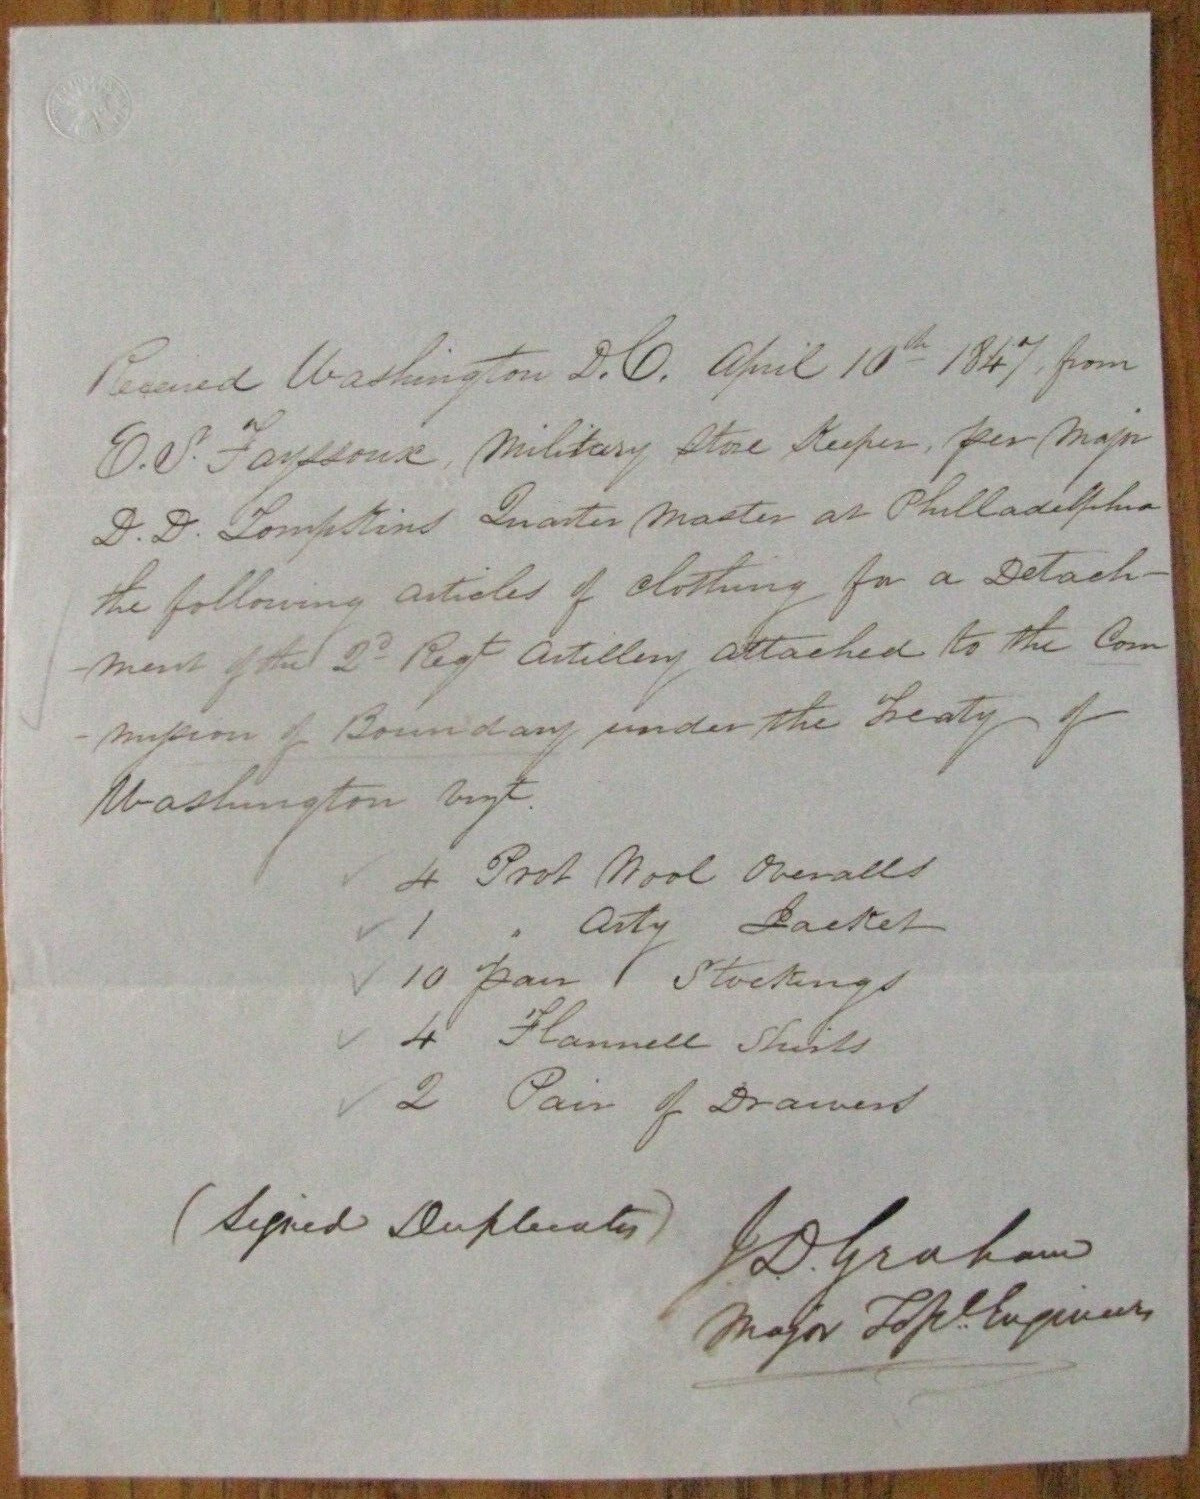 US-CANADA BOUNDARY COMMISSION SURVEY RECEIPT COLONEL JAMES D GRAHAM 1847